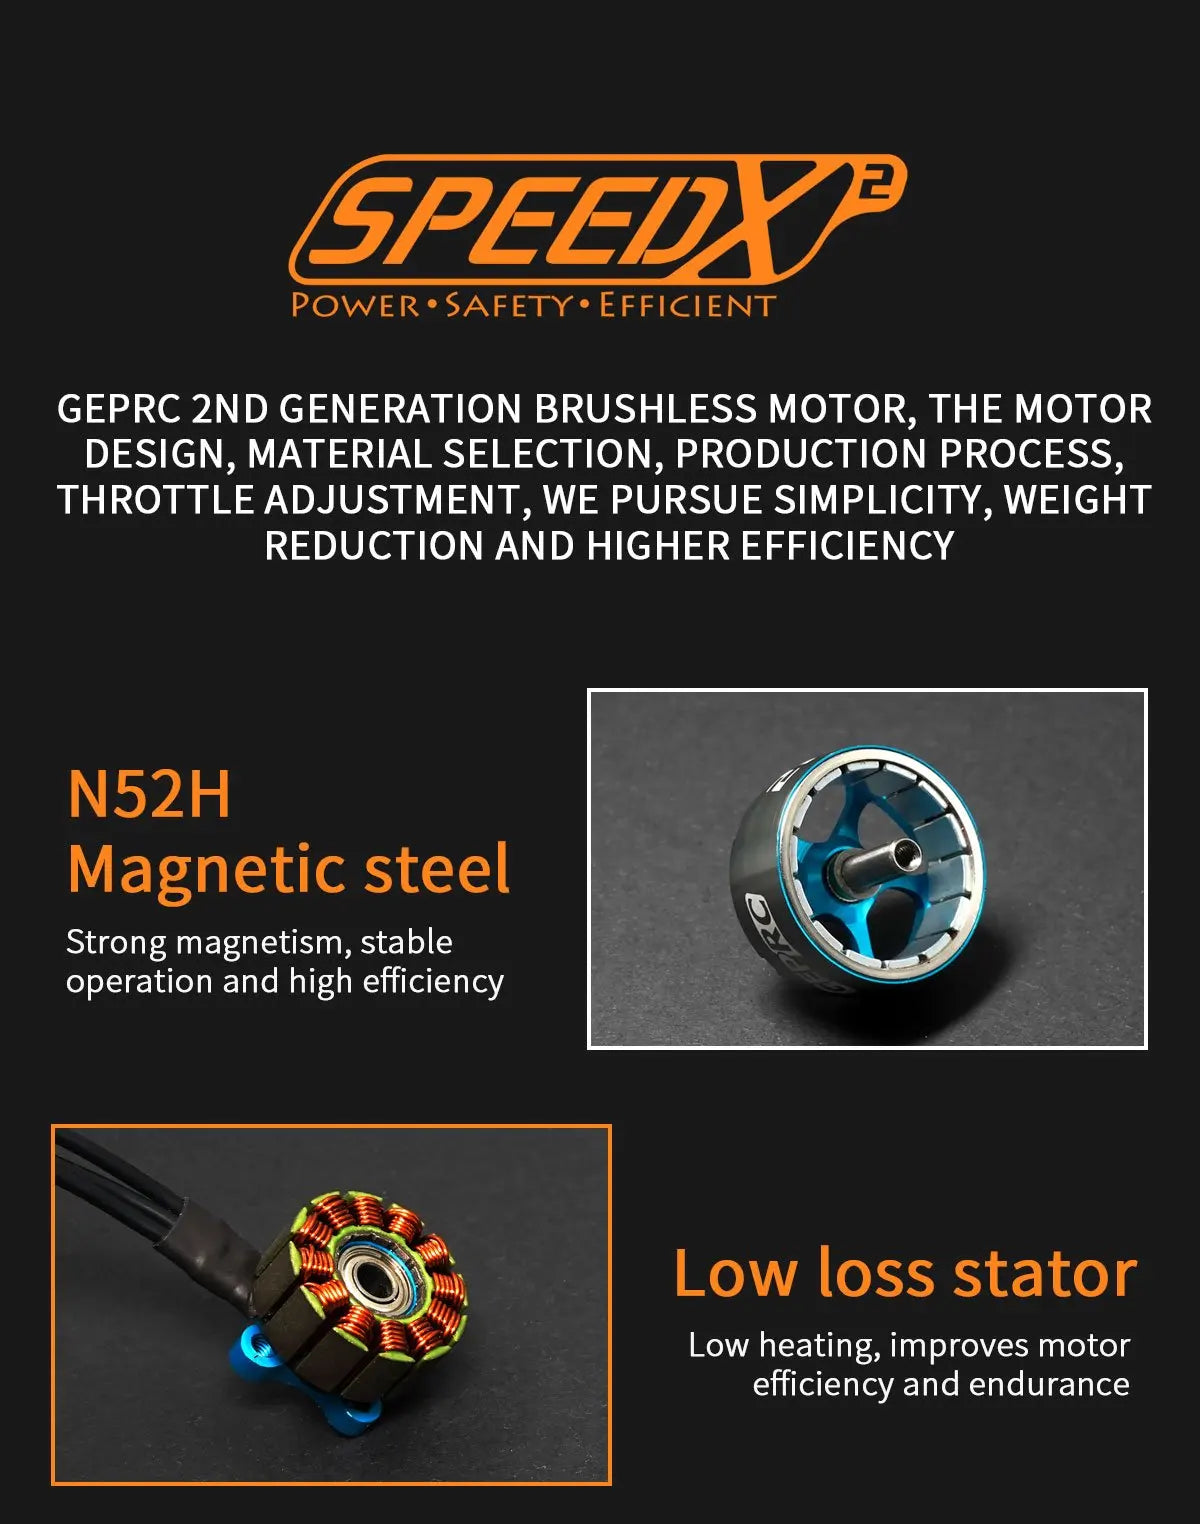 GEPRC SPEEDX2 Motor, FSPEEDX POWER SAFETY'S EFFICIENT GEPRC